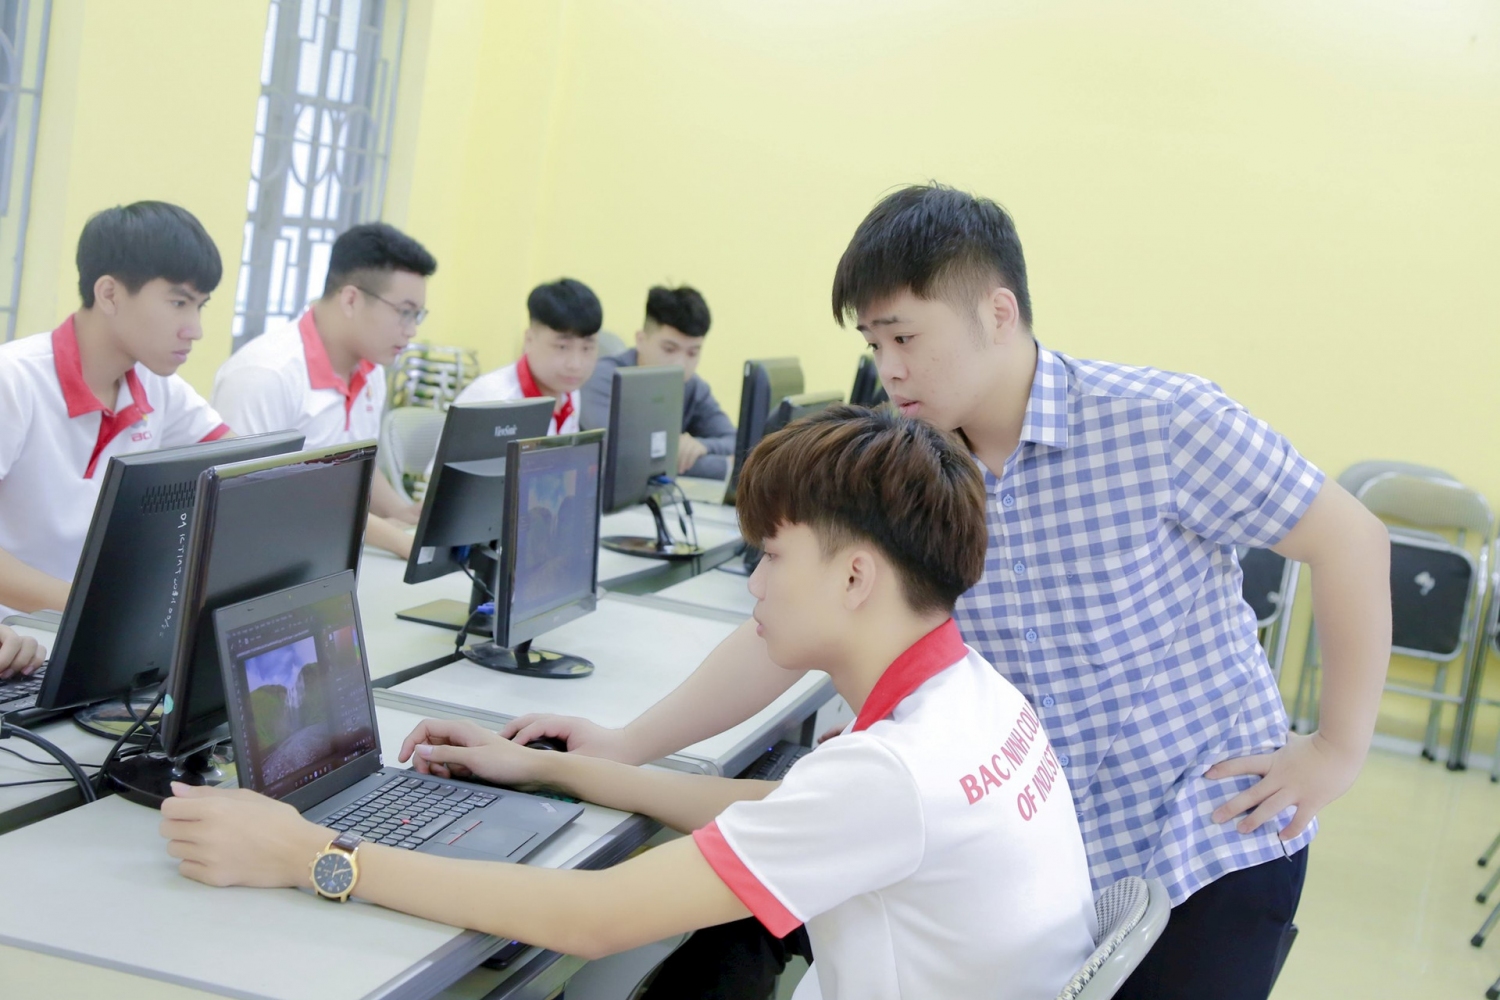 CĐS trong giáo dục nghề nghiệp trên địa bàn Bắc Ninh nhằm triển khai các hoạt động giáo dục nghề nghiệp trên môi trường số.